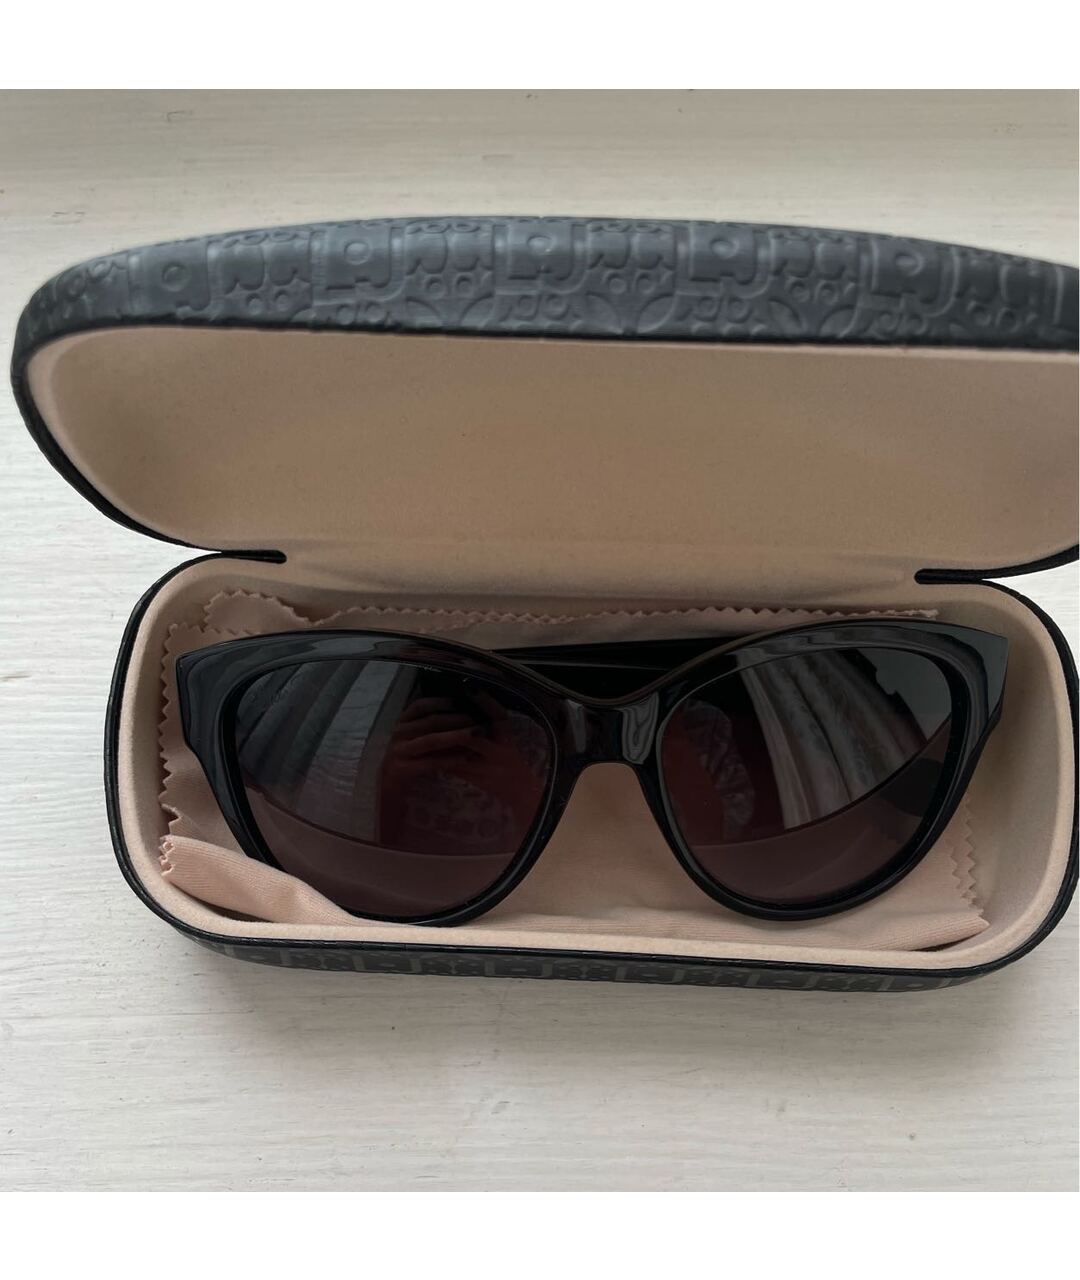 LIU JO Черные пластиковые солнцезащитные очки, фото 2